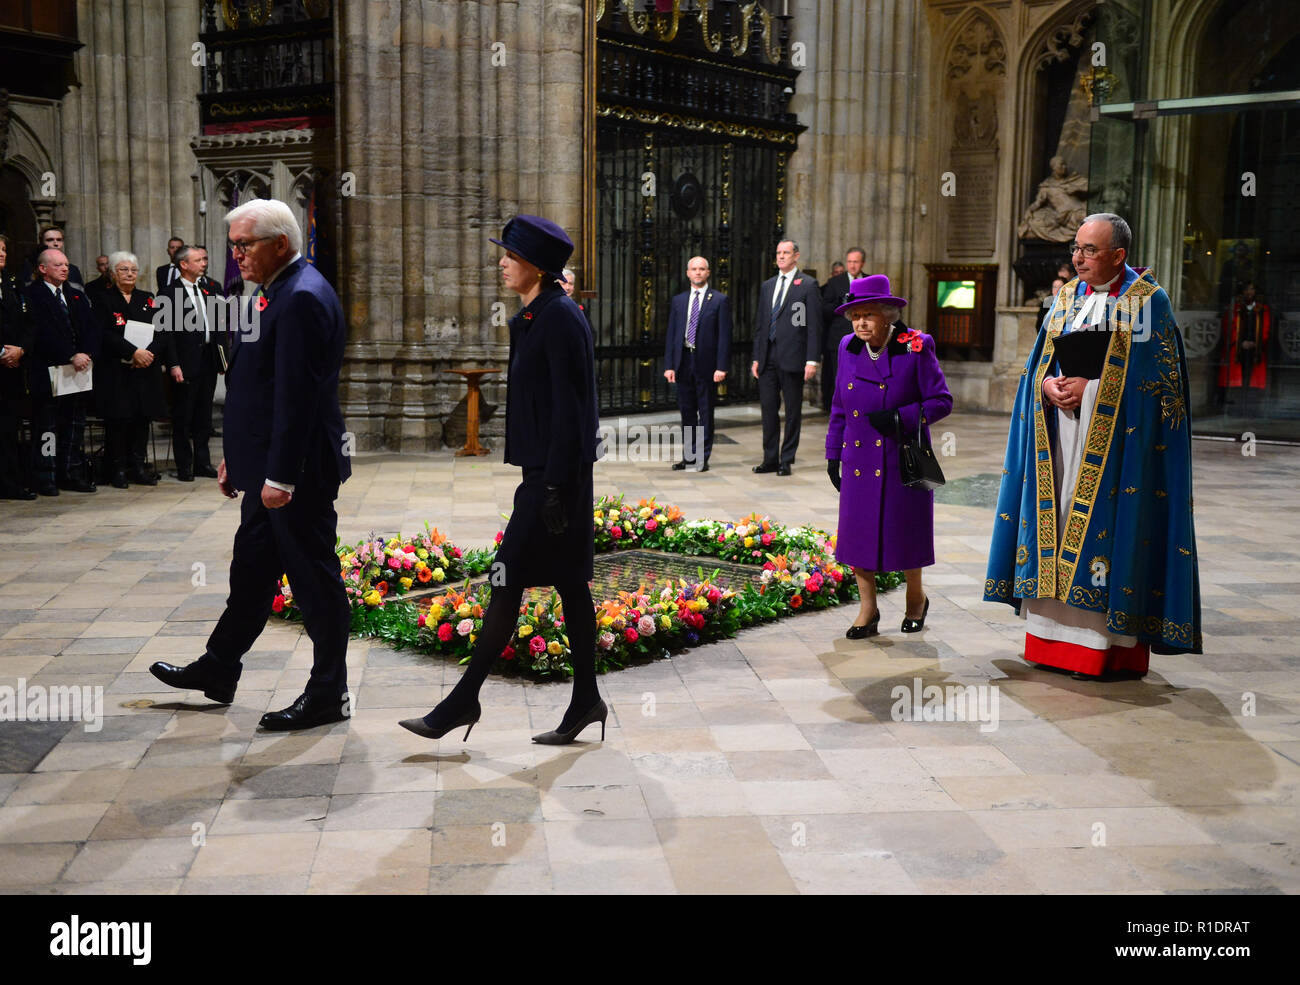 Königin Elizabeth II., Bundespräsident Dr. Frank-Walter Steinmeier und seine Frau Elke Budenbender an einem nationalen Service das 100-jährige Jubiläum des Waffenstillstandes am Westminster Abbey, London zu markieren. Stockfoto